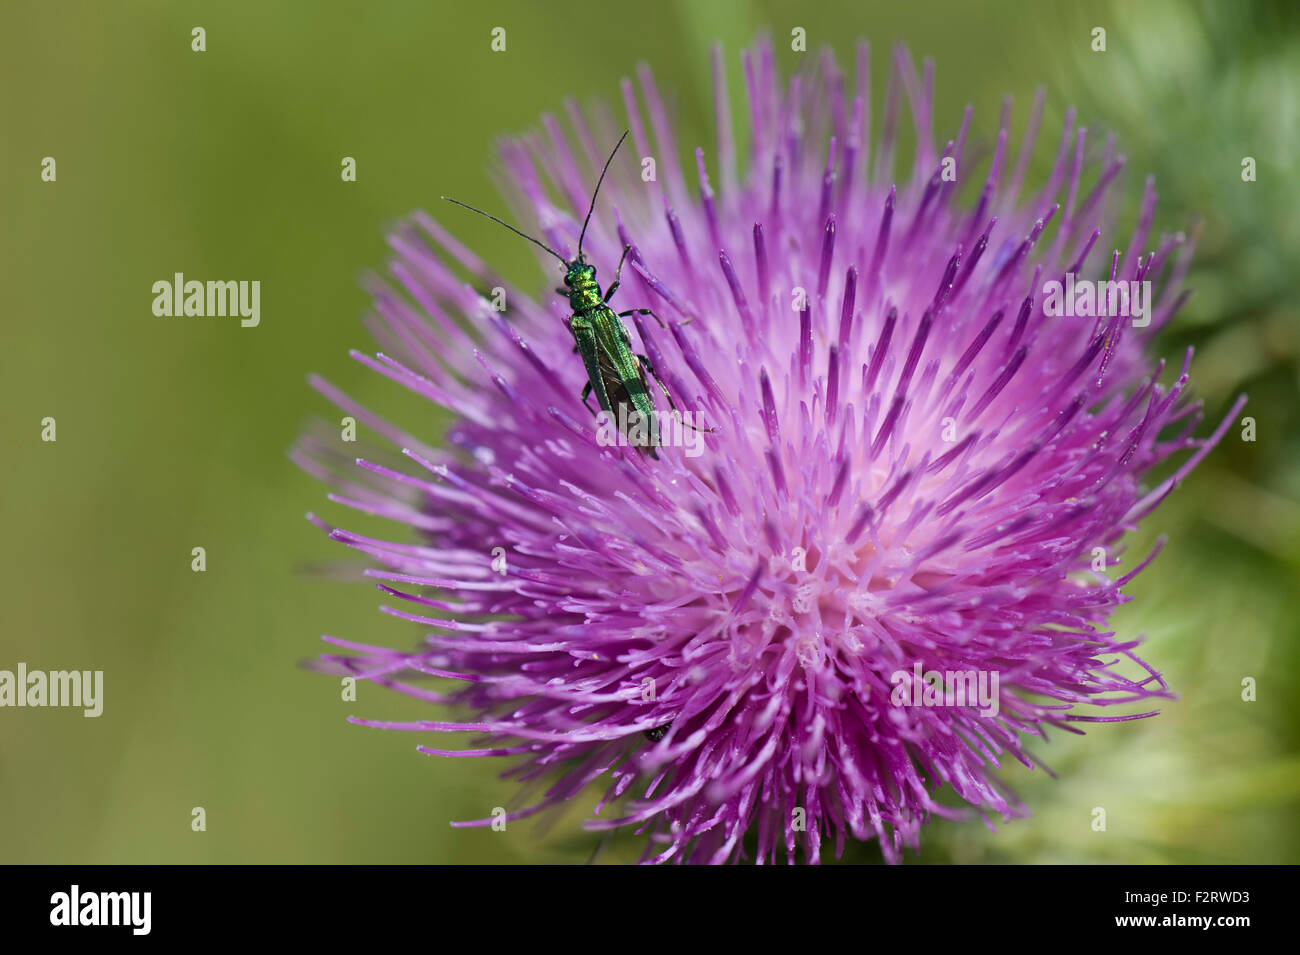 Falsches Öl Käfer, dicken Beinen, weibliche (ohne geschwollenen Hinterbeine Oberschenkelknochen) ernähren sich von einem Speer Distel Blume, Julyangiosperm Stockfoto